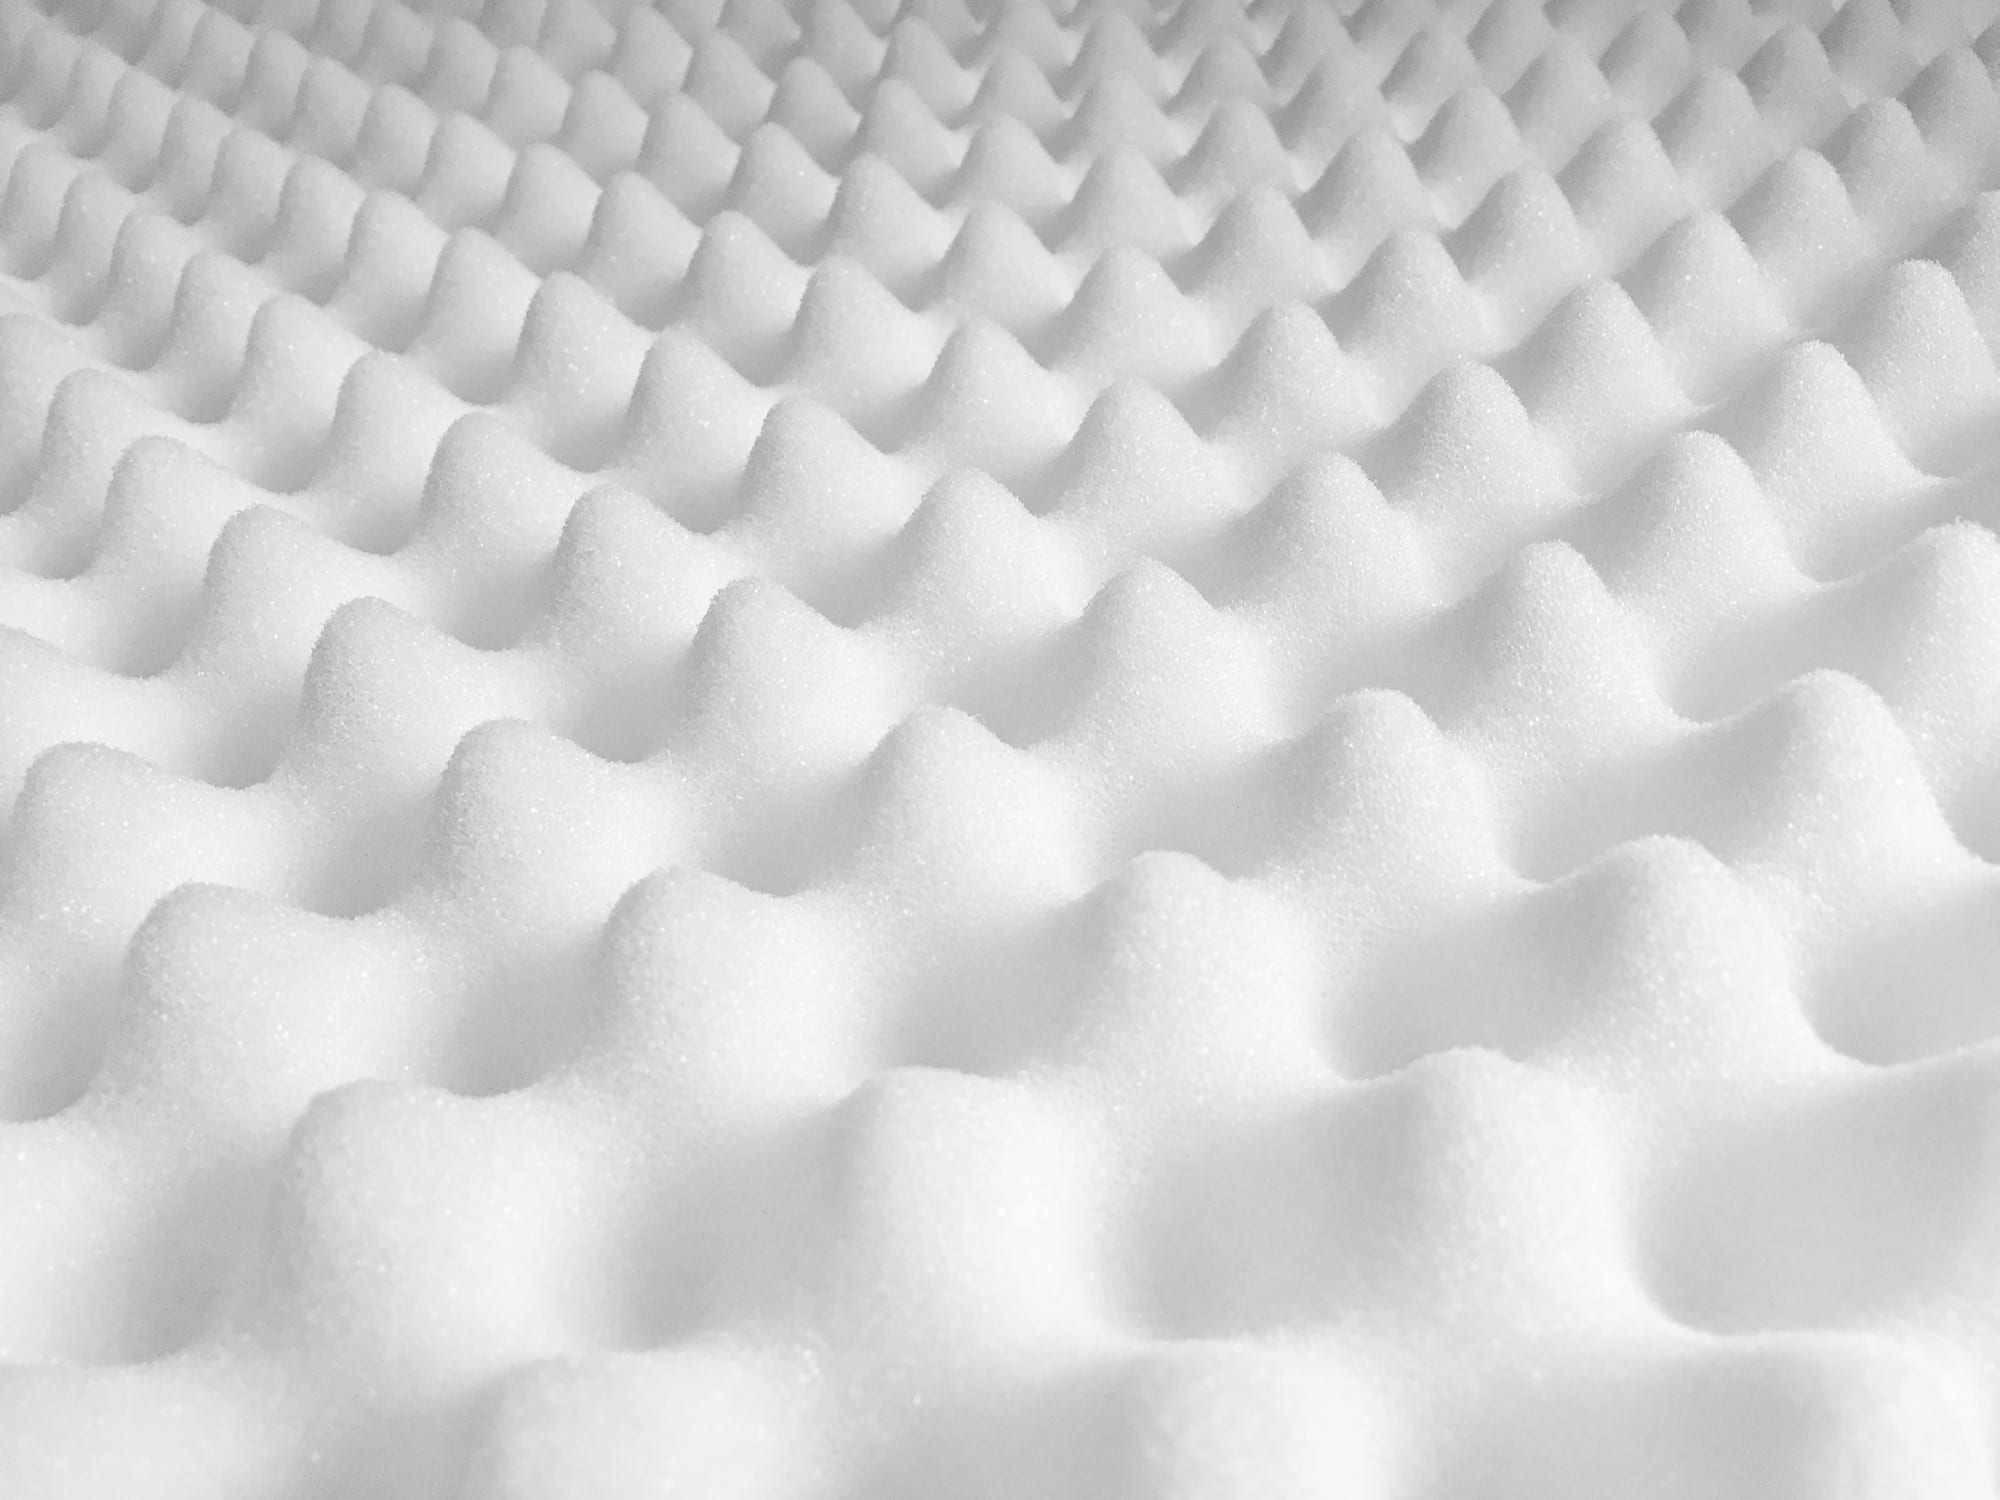 egg crate mattress topper vs memory foam